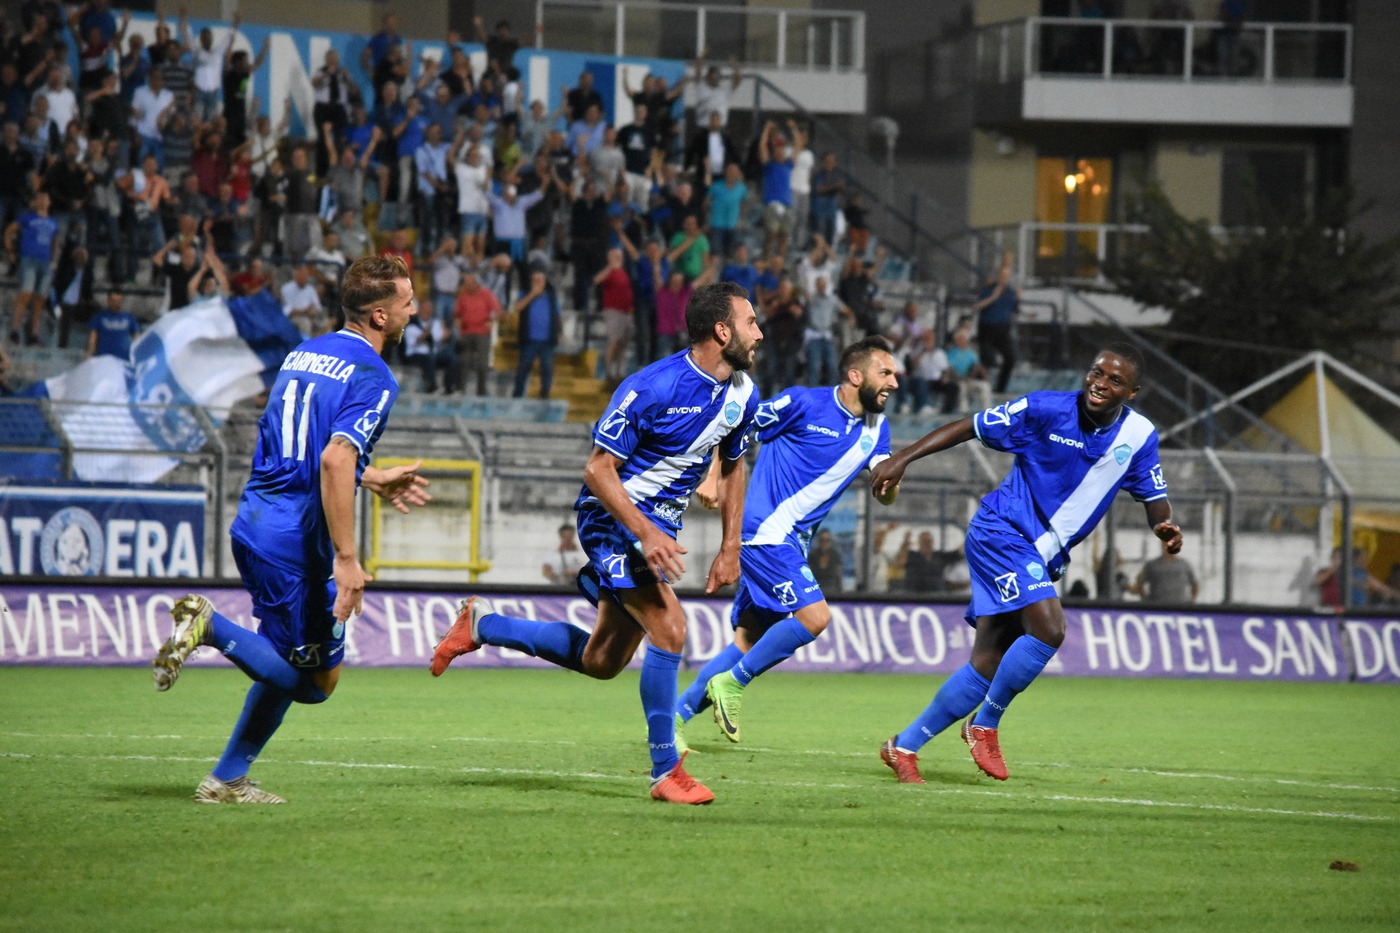 Matera-Siracusa 24 novembre: match valido per il gruppo C della Serie C. I lucani sono ultimi per via della penalizzazione.